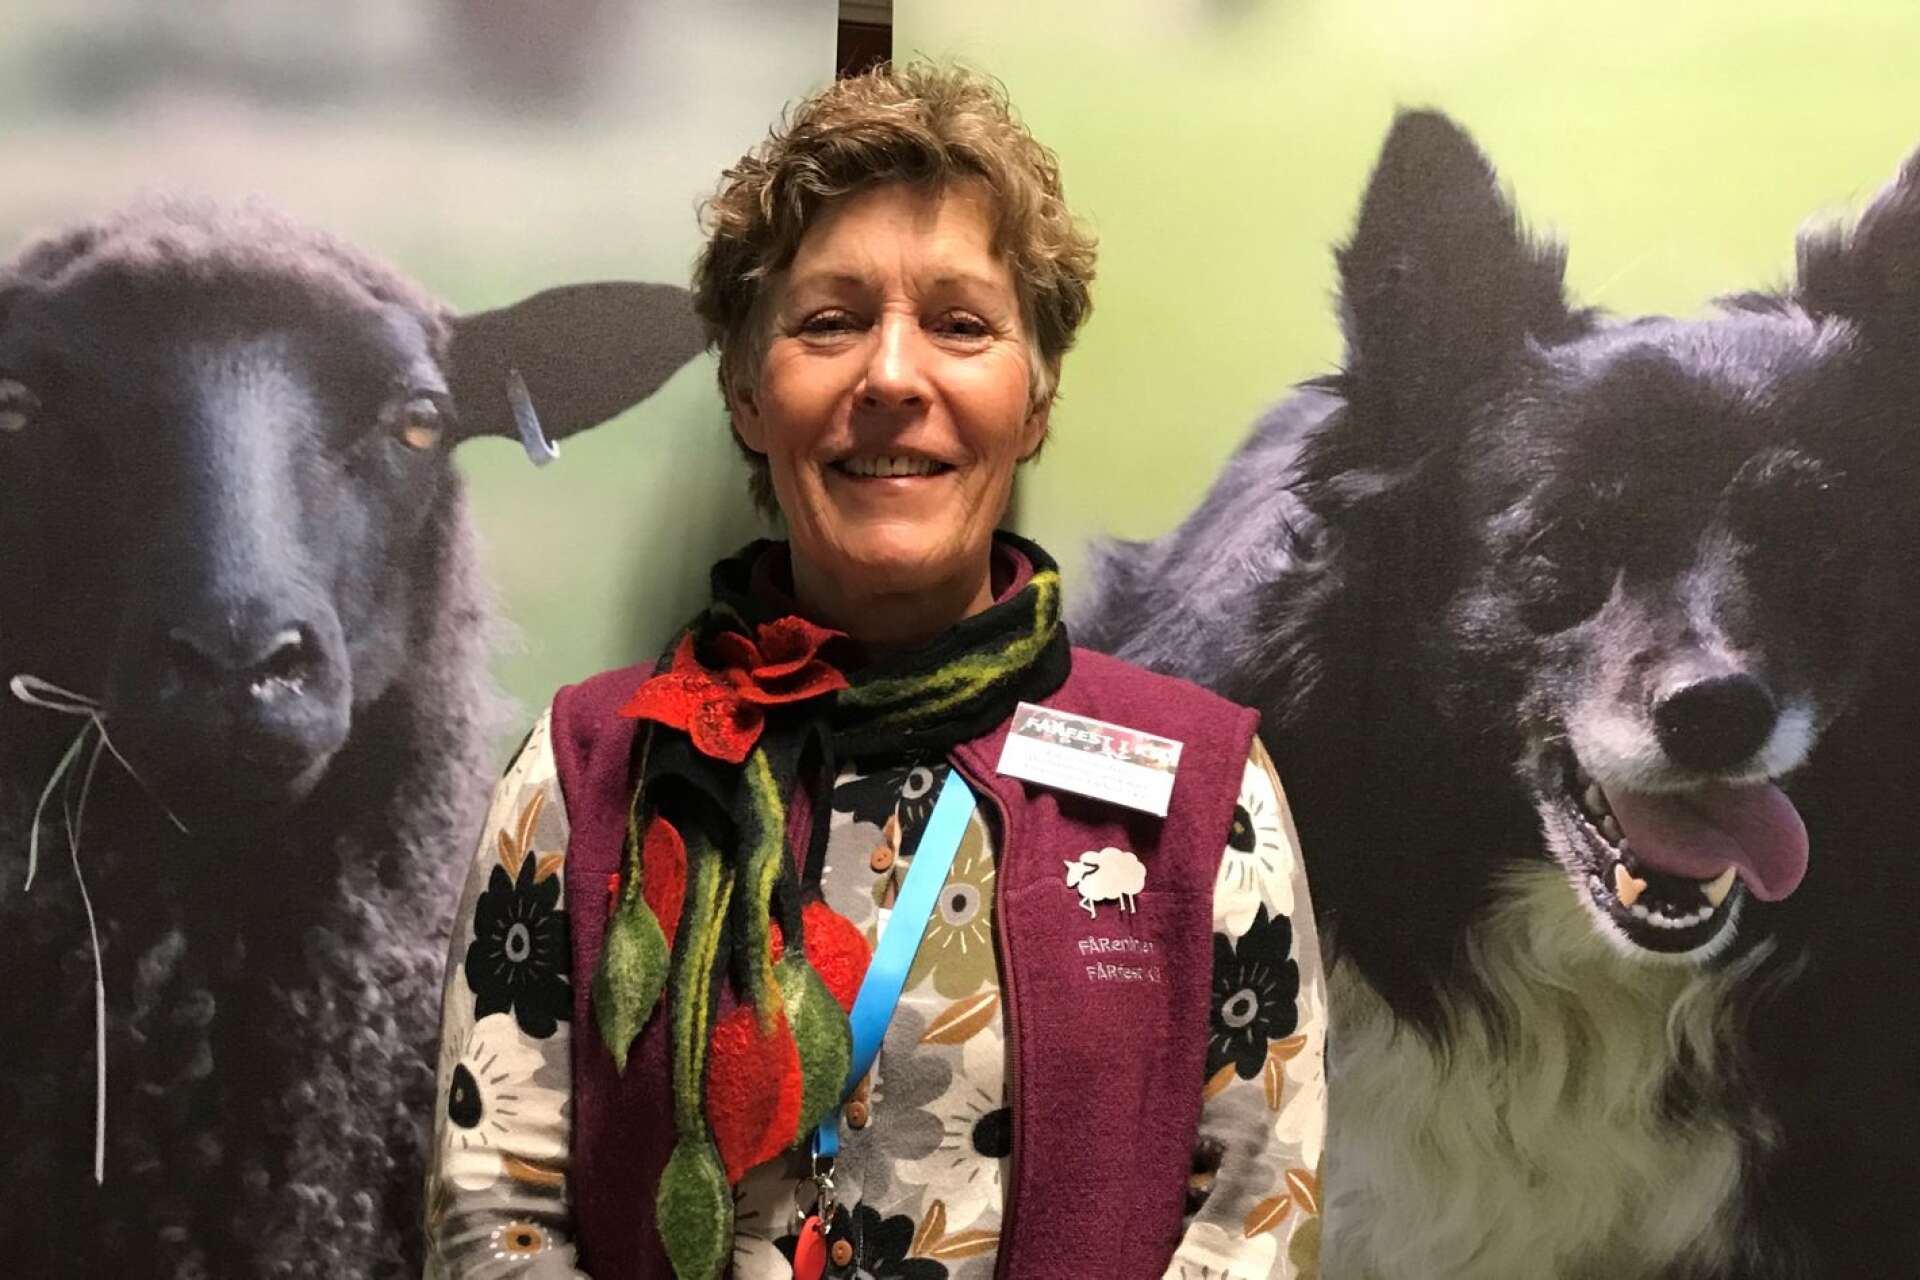 Det blir en fårfest i år igen, trots allt, men den blir digital. ”Vi har så mycket spännande på gång”, säger Karin Granström som är ordförande i Fåreningen Fårfest i Kil.